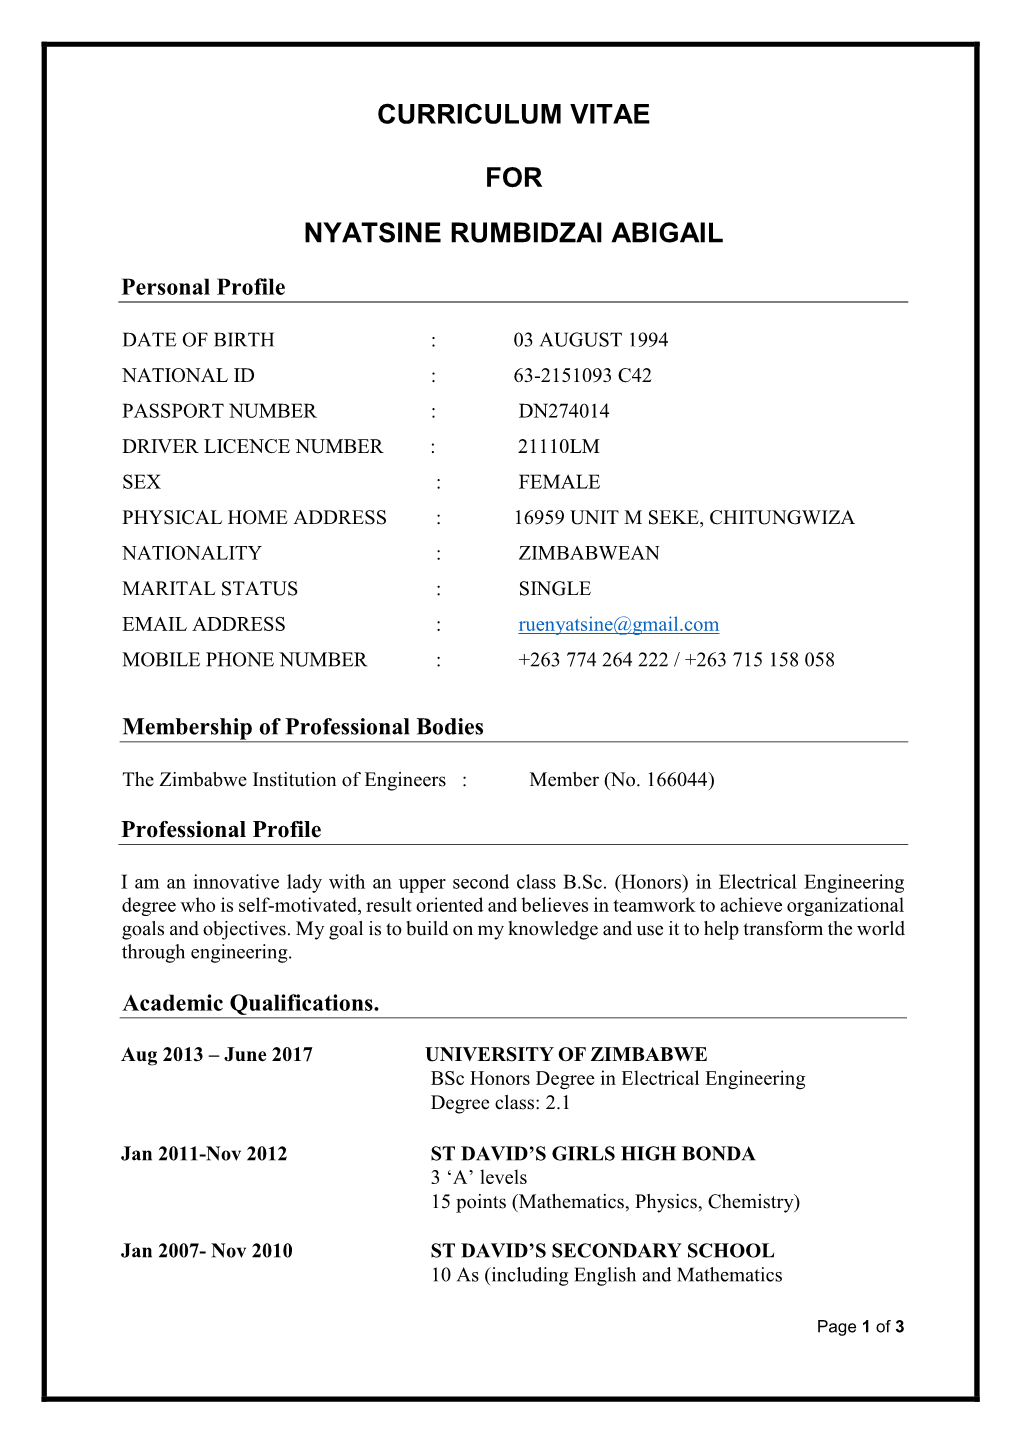 Curriculum Vitae for Nyatsine Rumbidzai Abigail